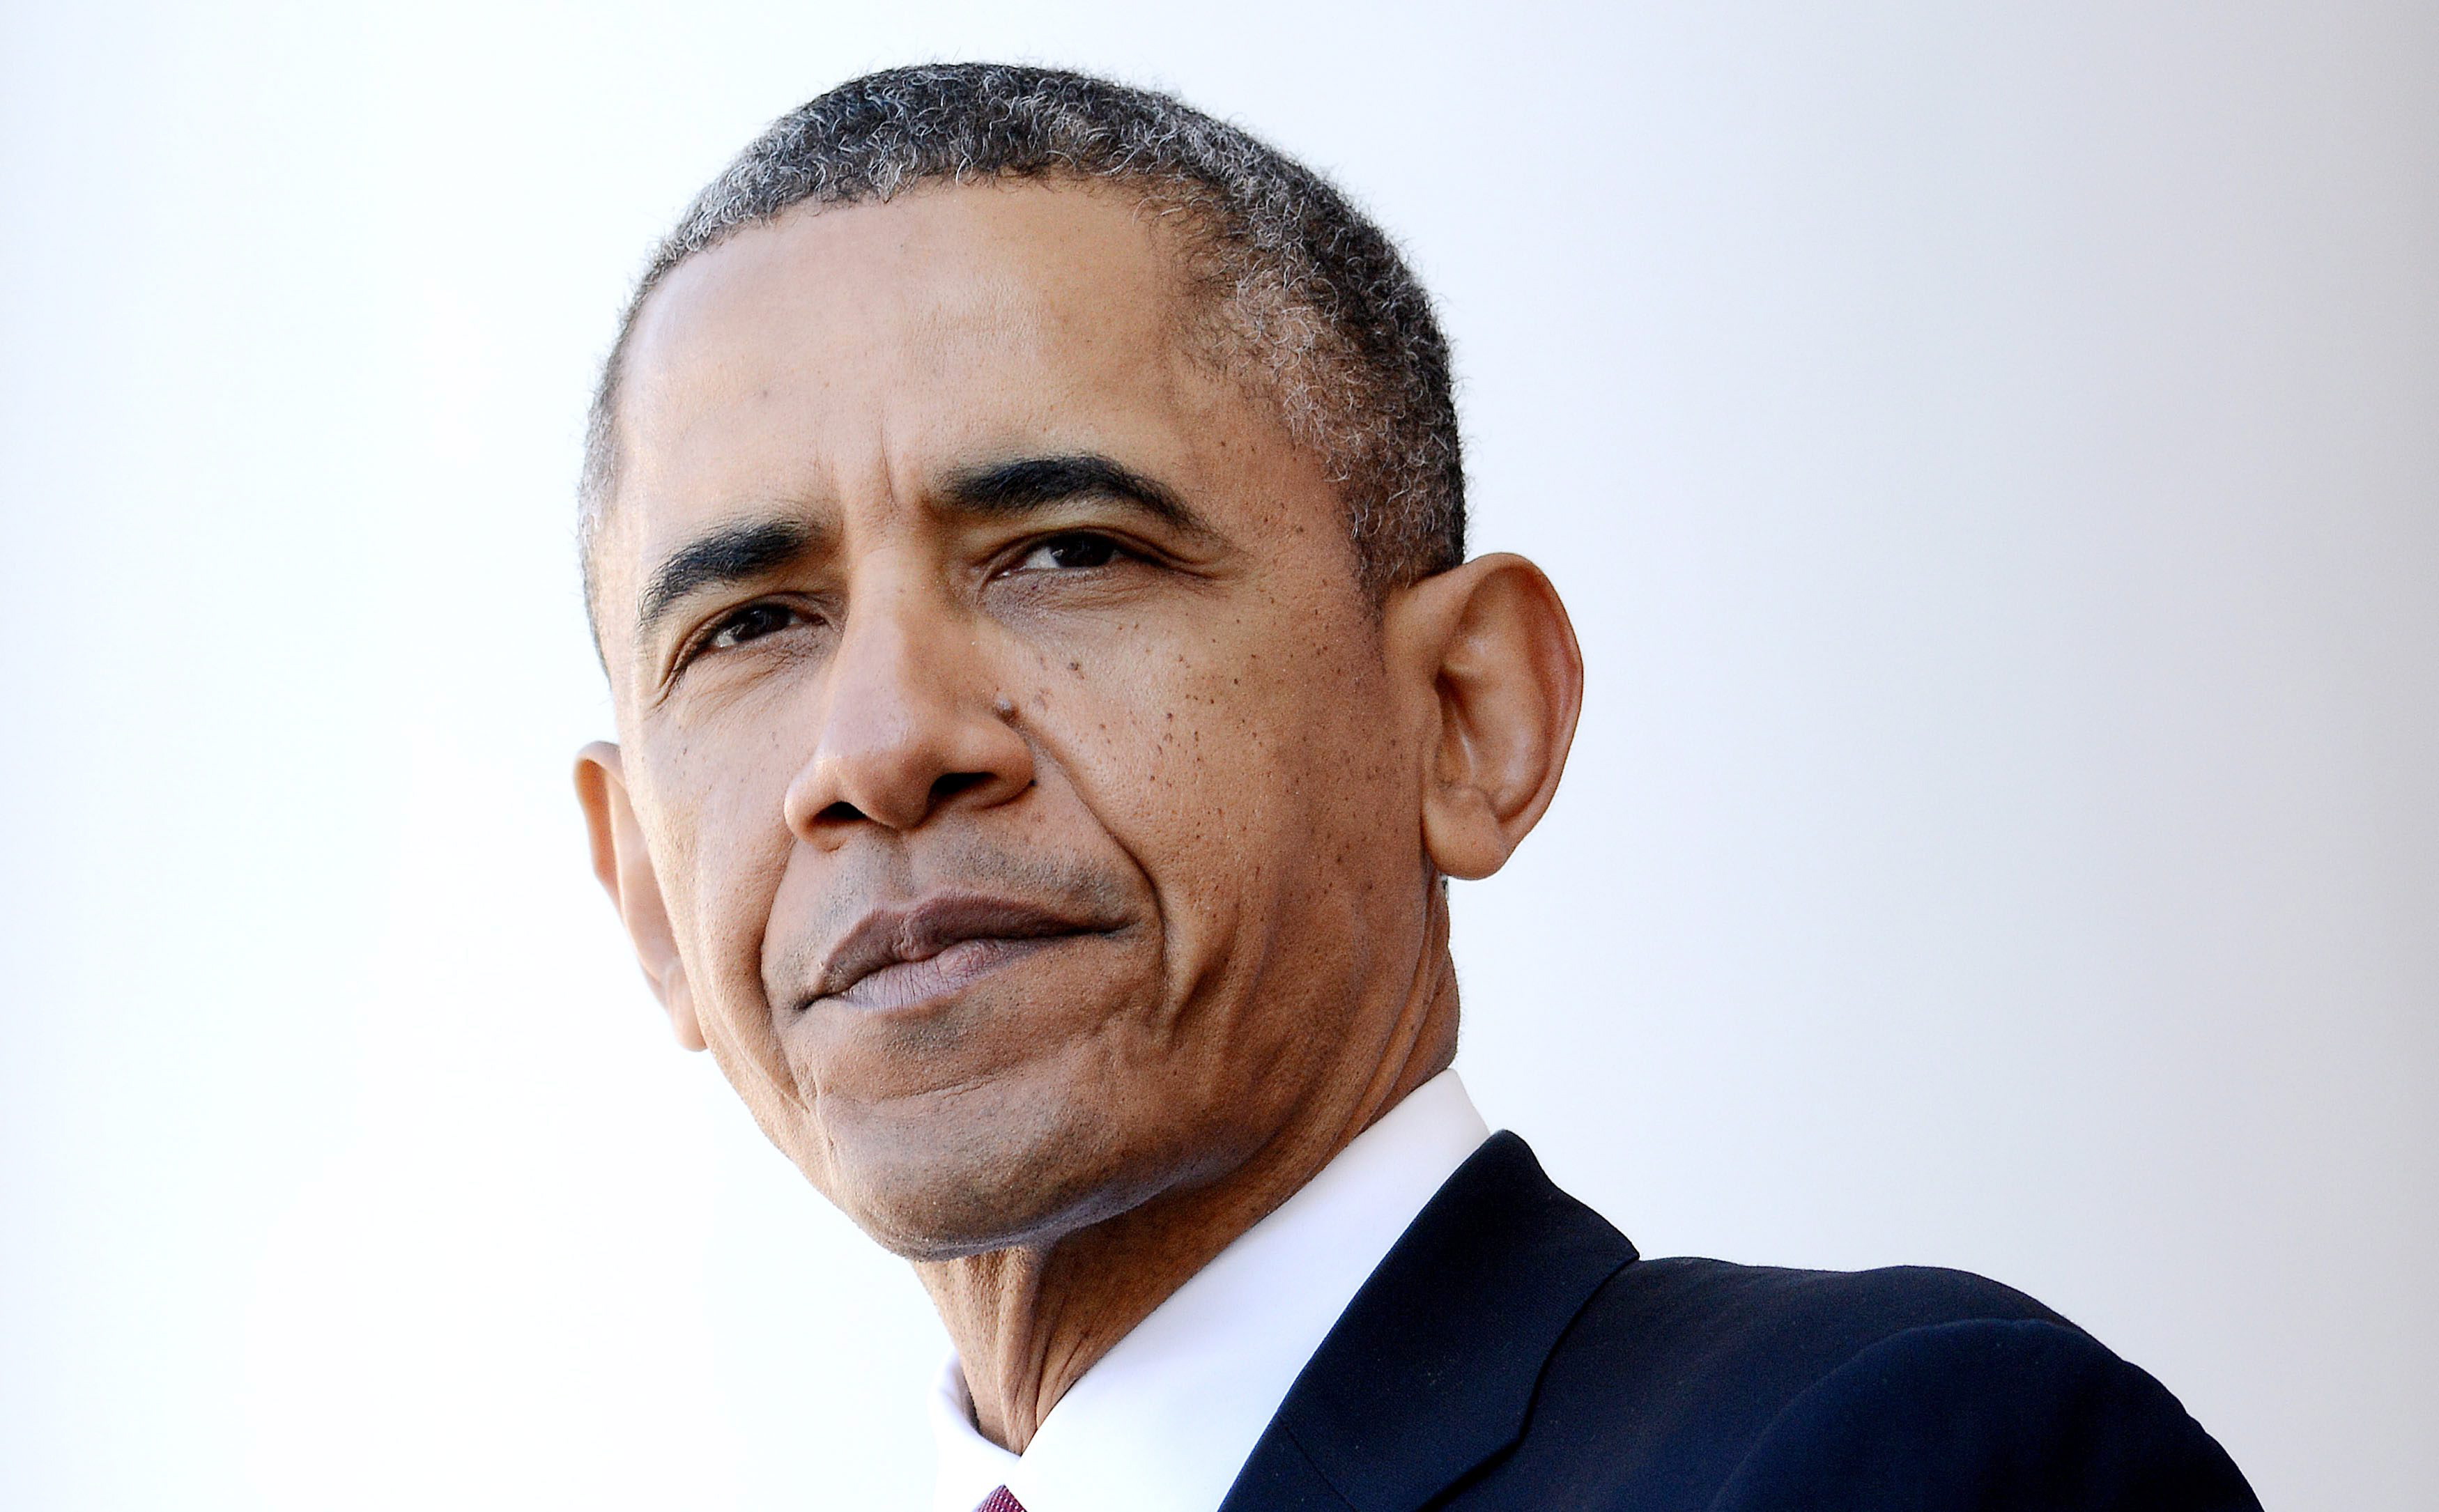 نگاهی سیاست خارجی باراک اوباما: از مینیمالیسم جفرسون تا کلان استراتژی نیکسون